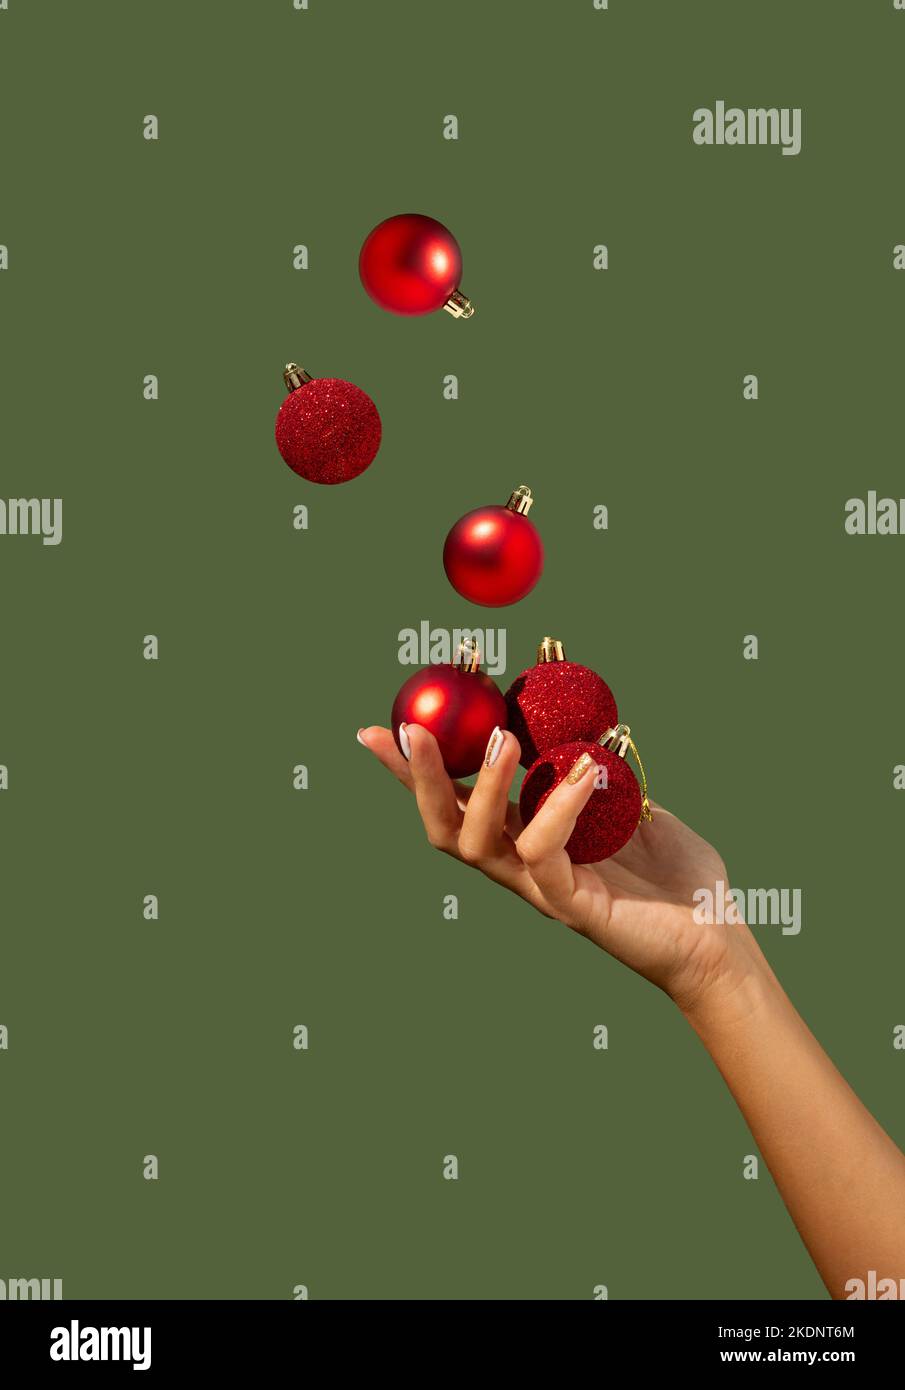 Les boules de Noël juglant à la main d'une belle femme sur fond vert foncé. Concept de vacances minimal. Bonne Année. Copier l'espace. Banque D'Images